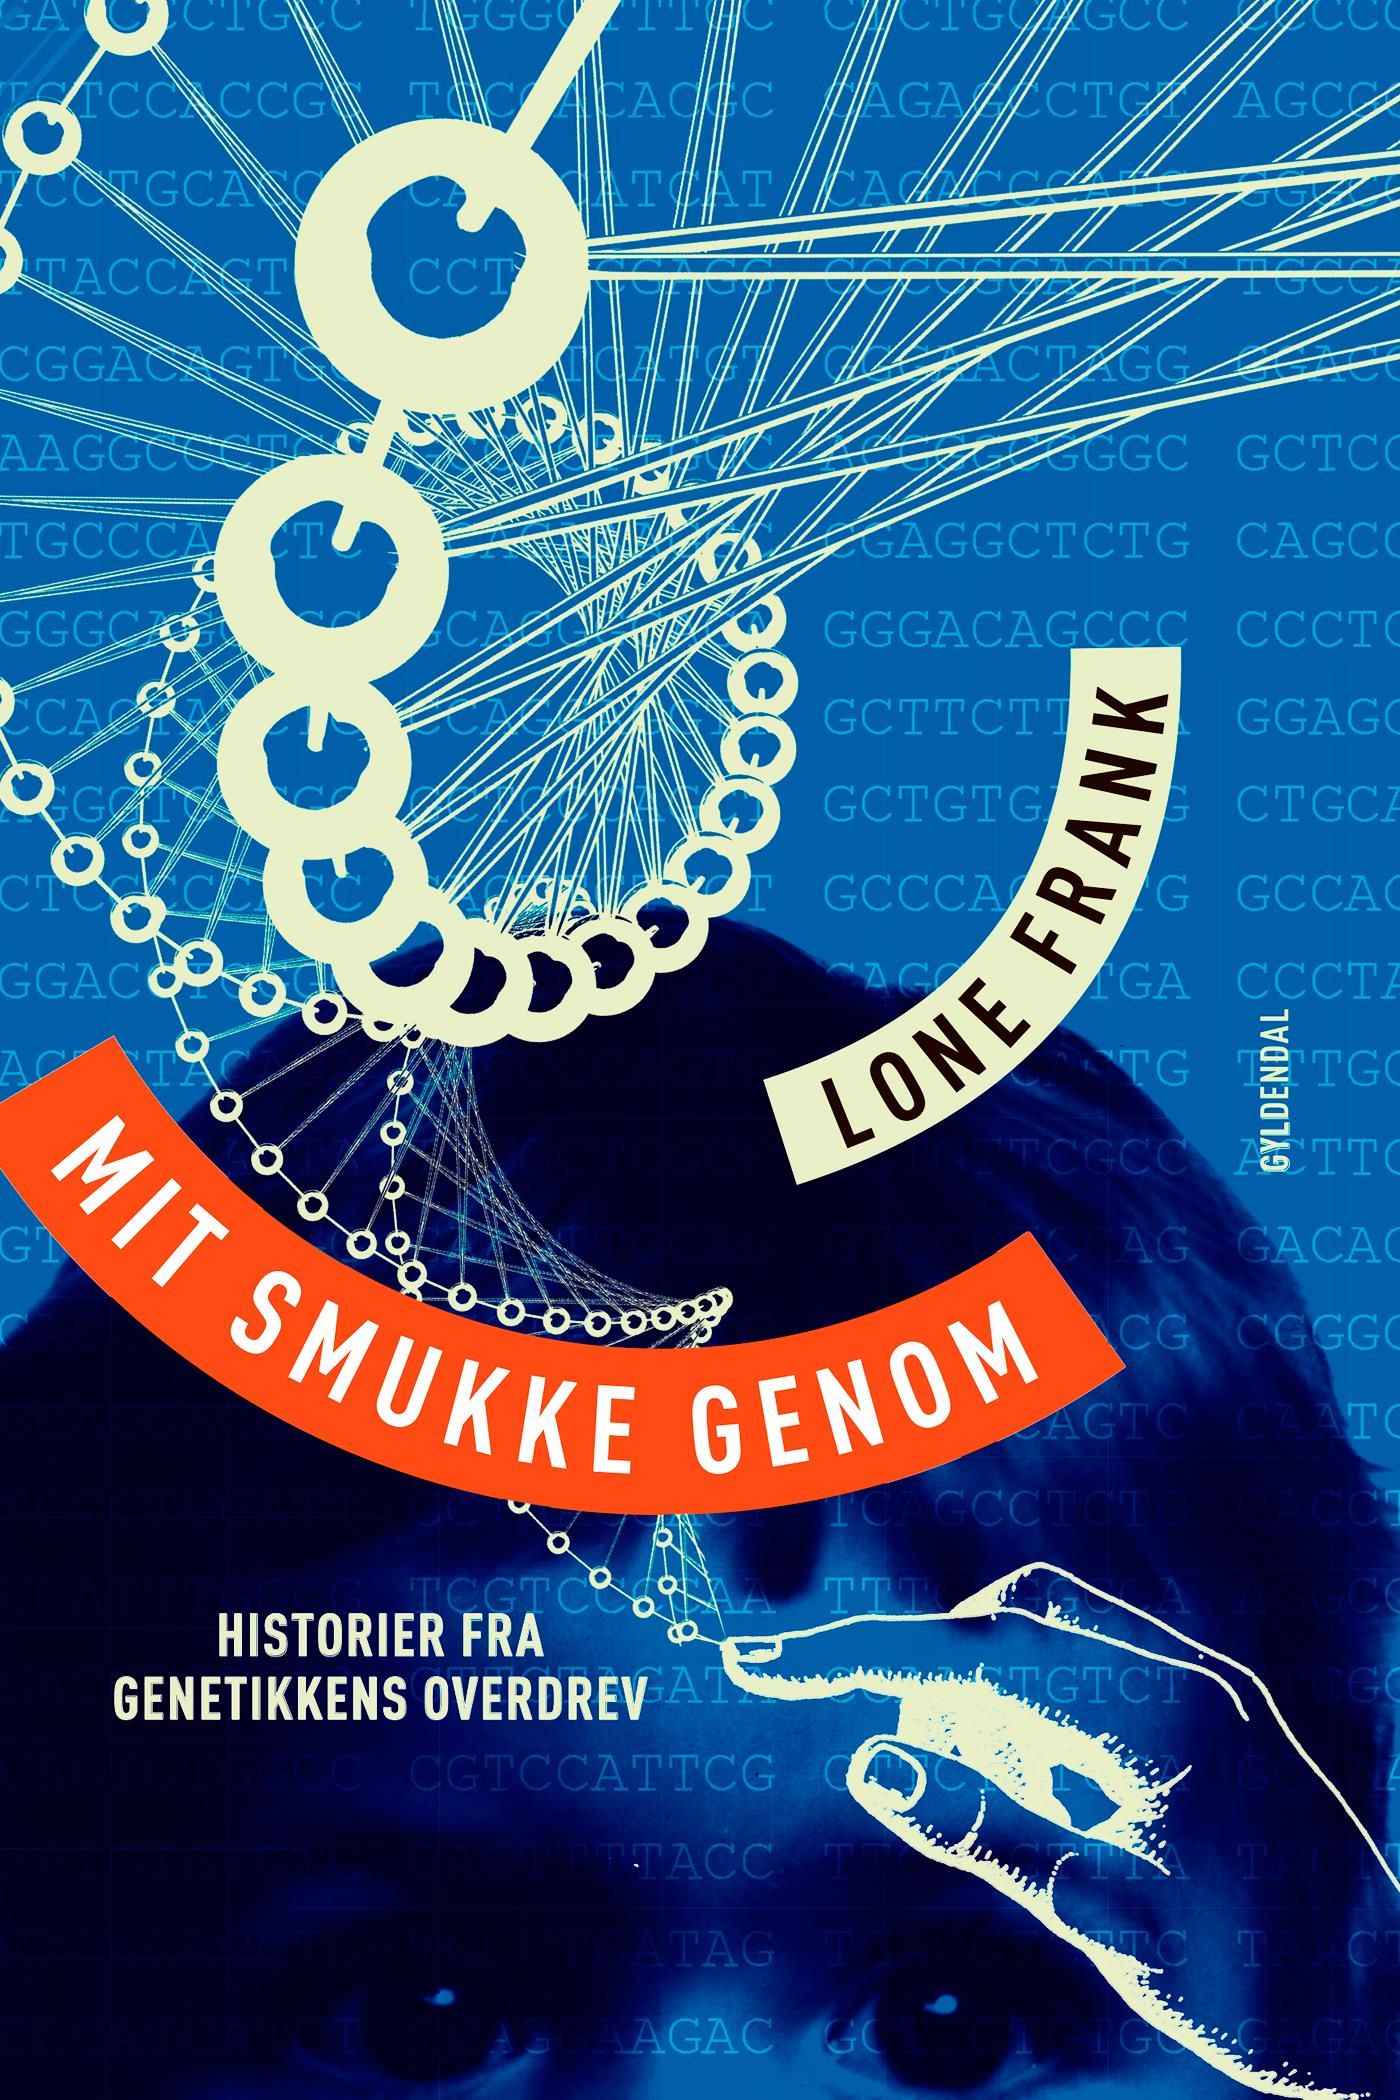 Mit smukke genom, eBook by Lone Frank